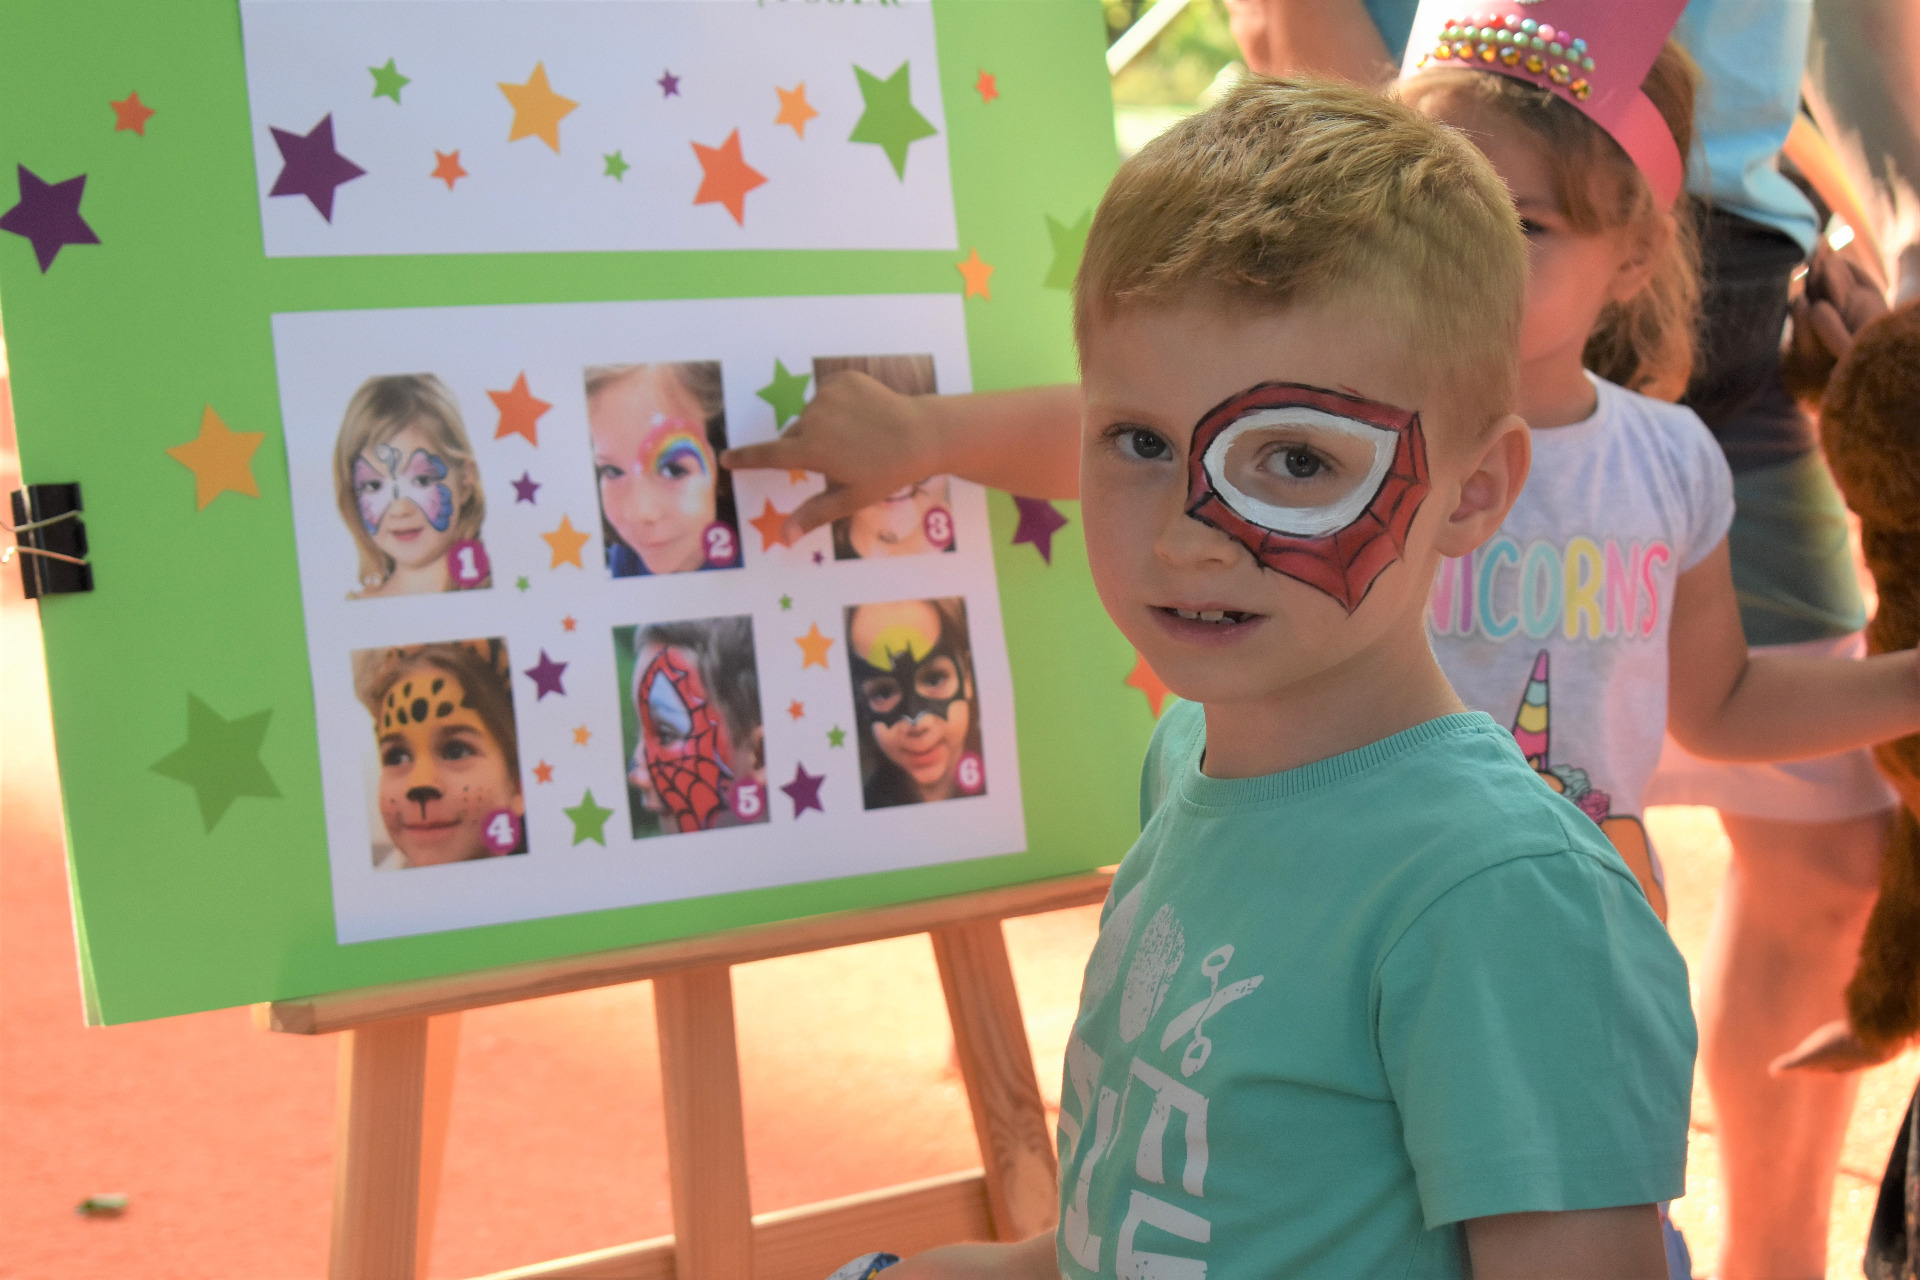 Chłopiec z pomalowaną twarzą zainspirowaną bajką spiderman.